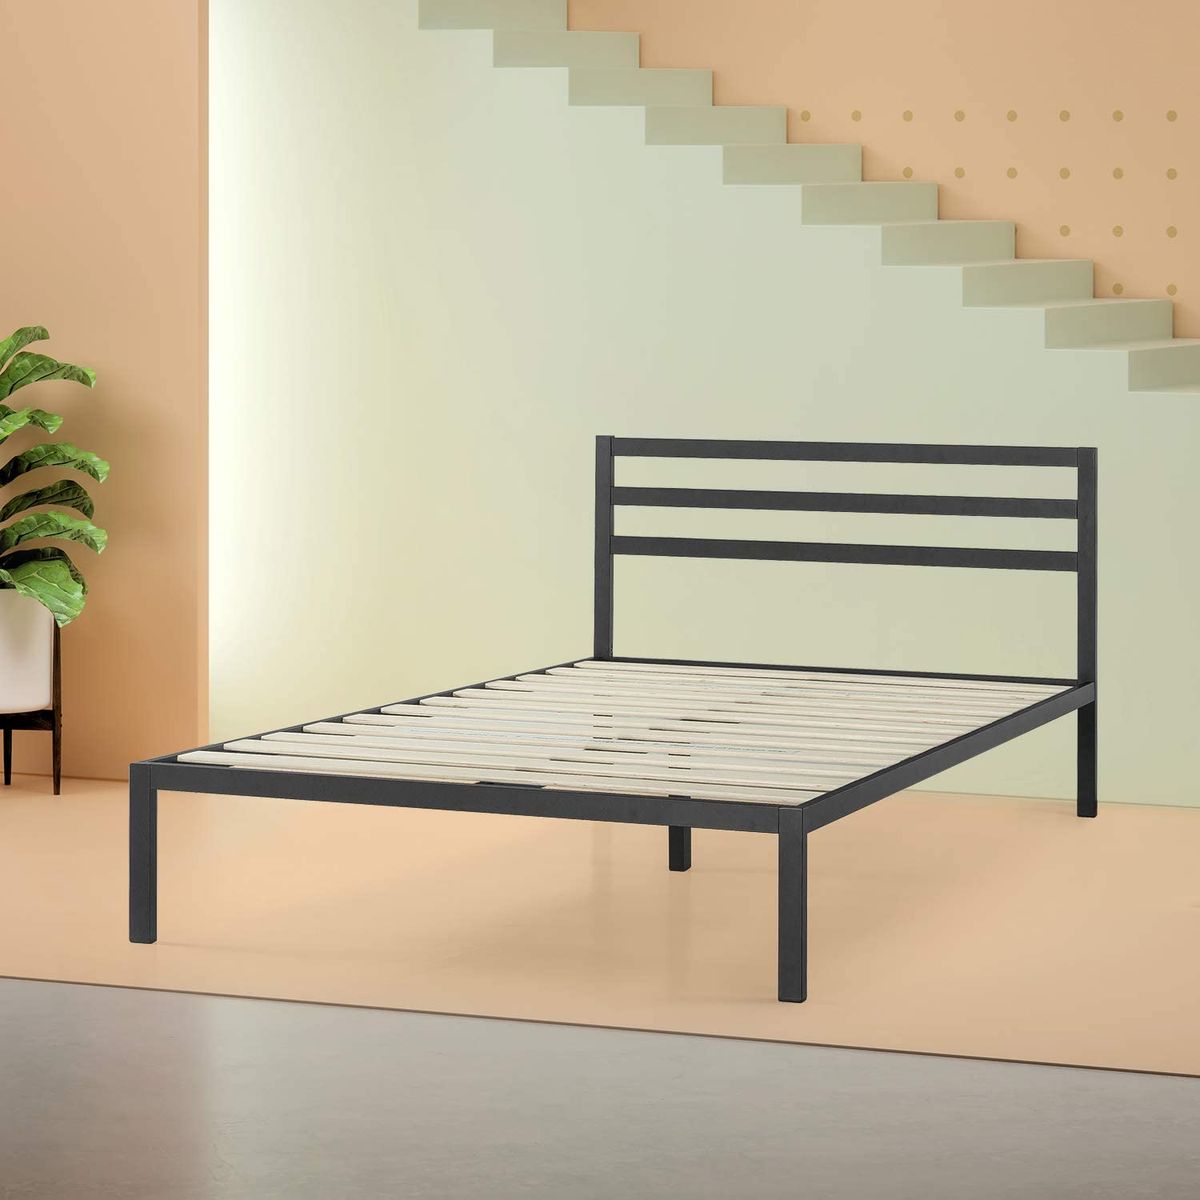 19 Best Metal Bed Frames 2020 The, Metal Bed Frame Support Bar